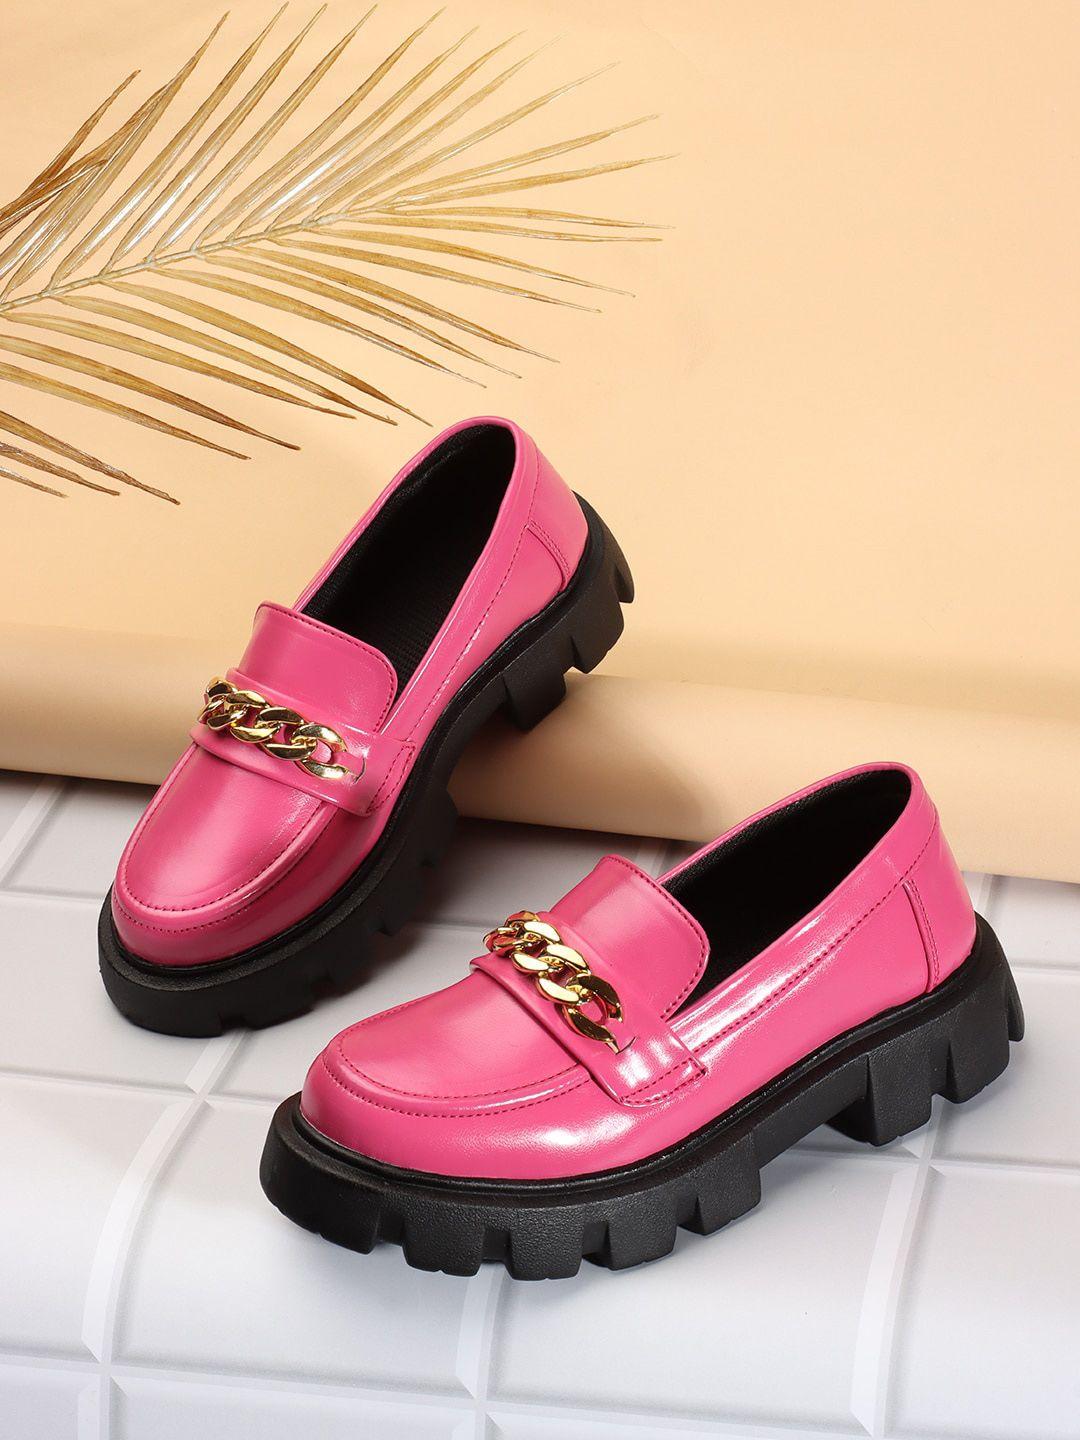 rindas women pink loafers